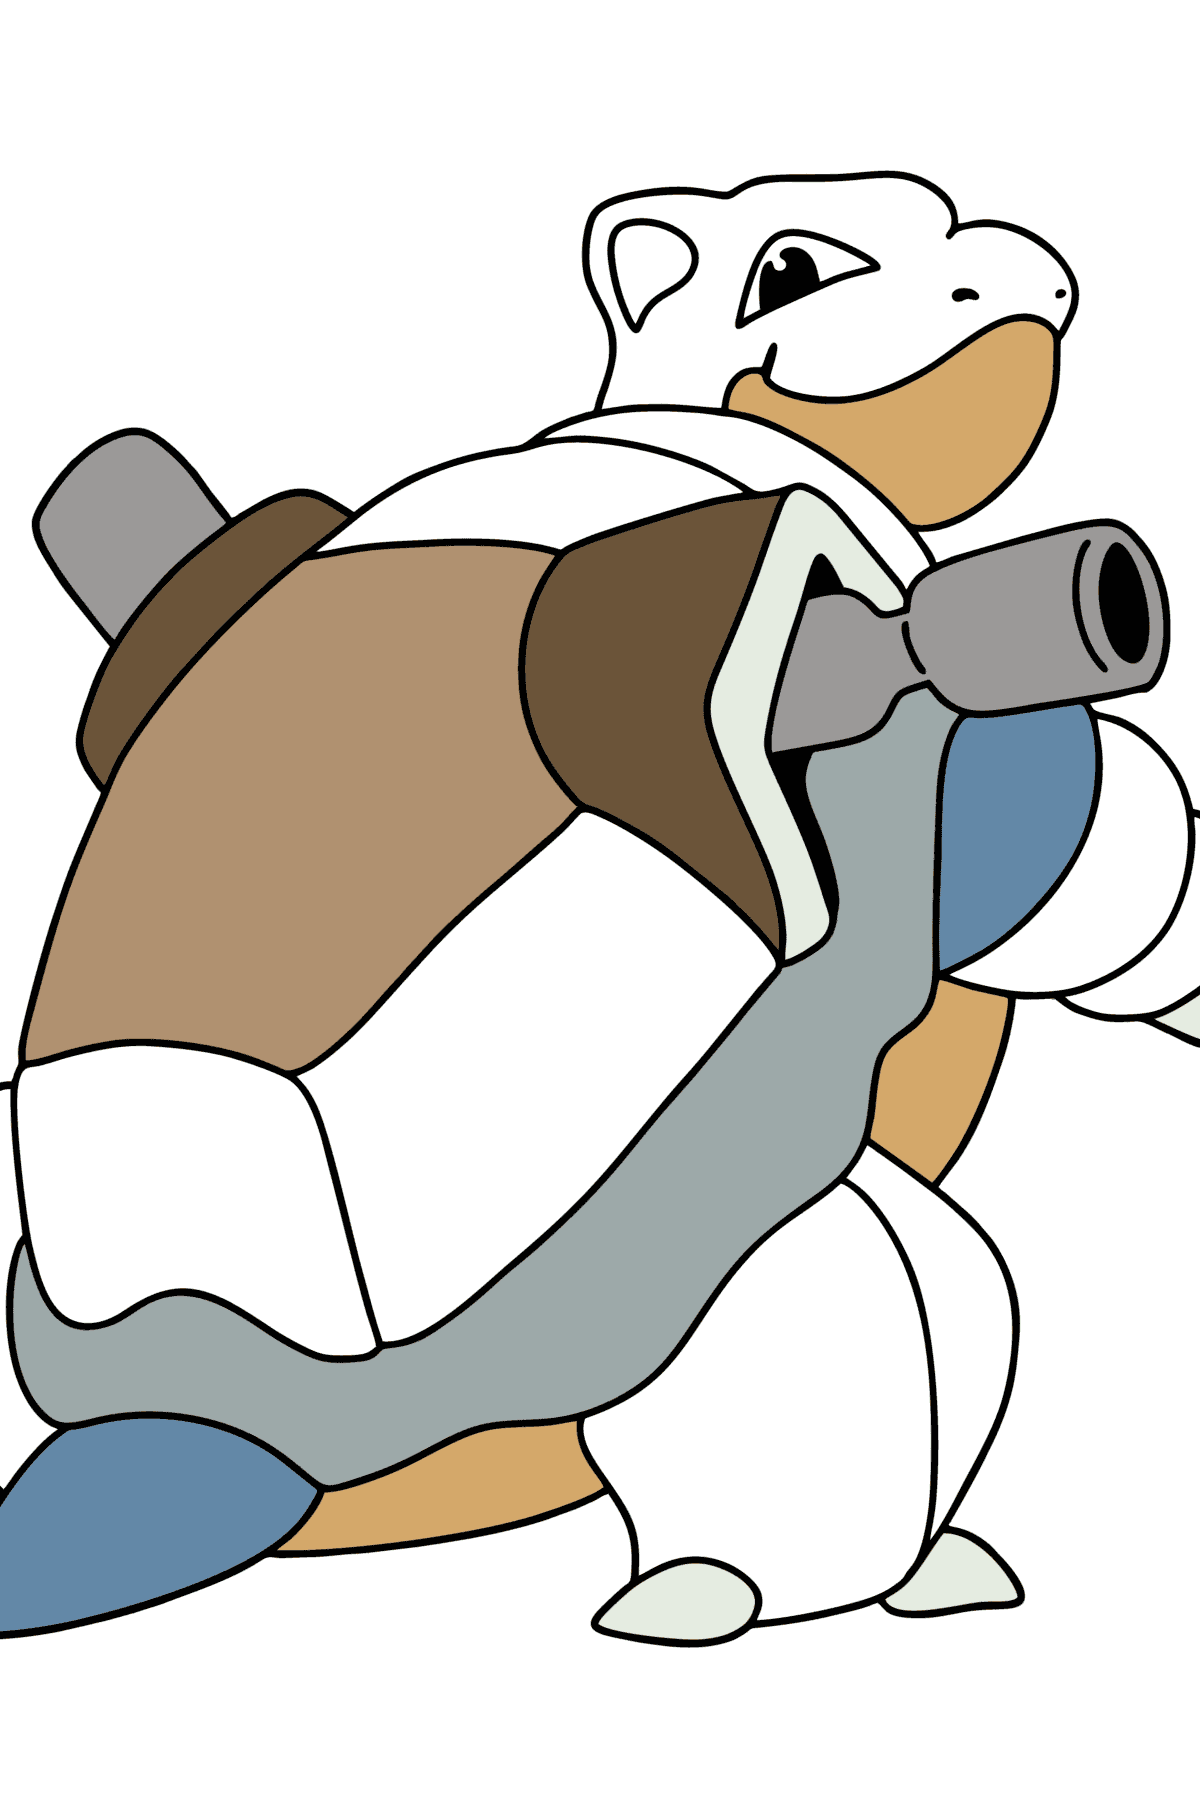 Ausmalbild Pokémon Go Blastoise - Malvorlagen für Kinder